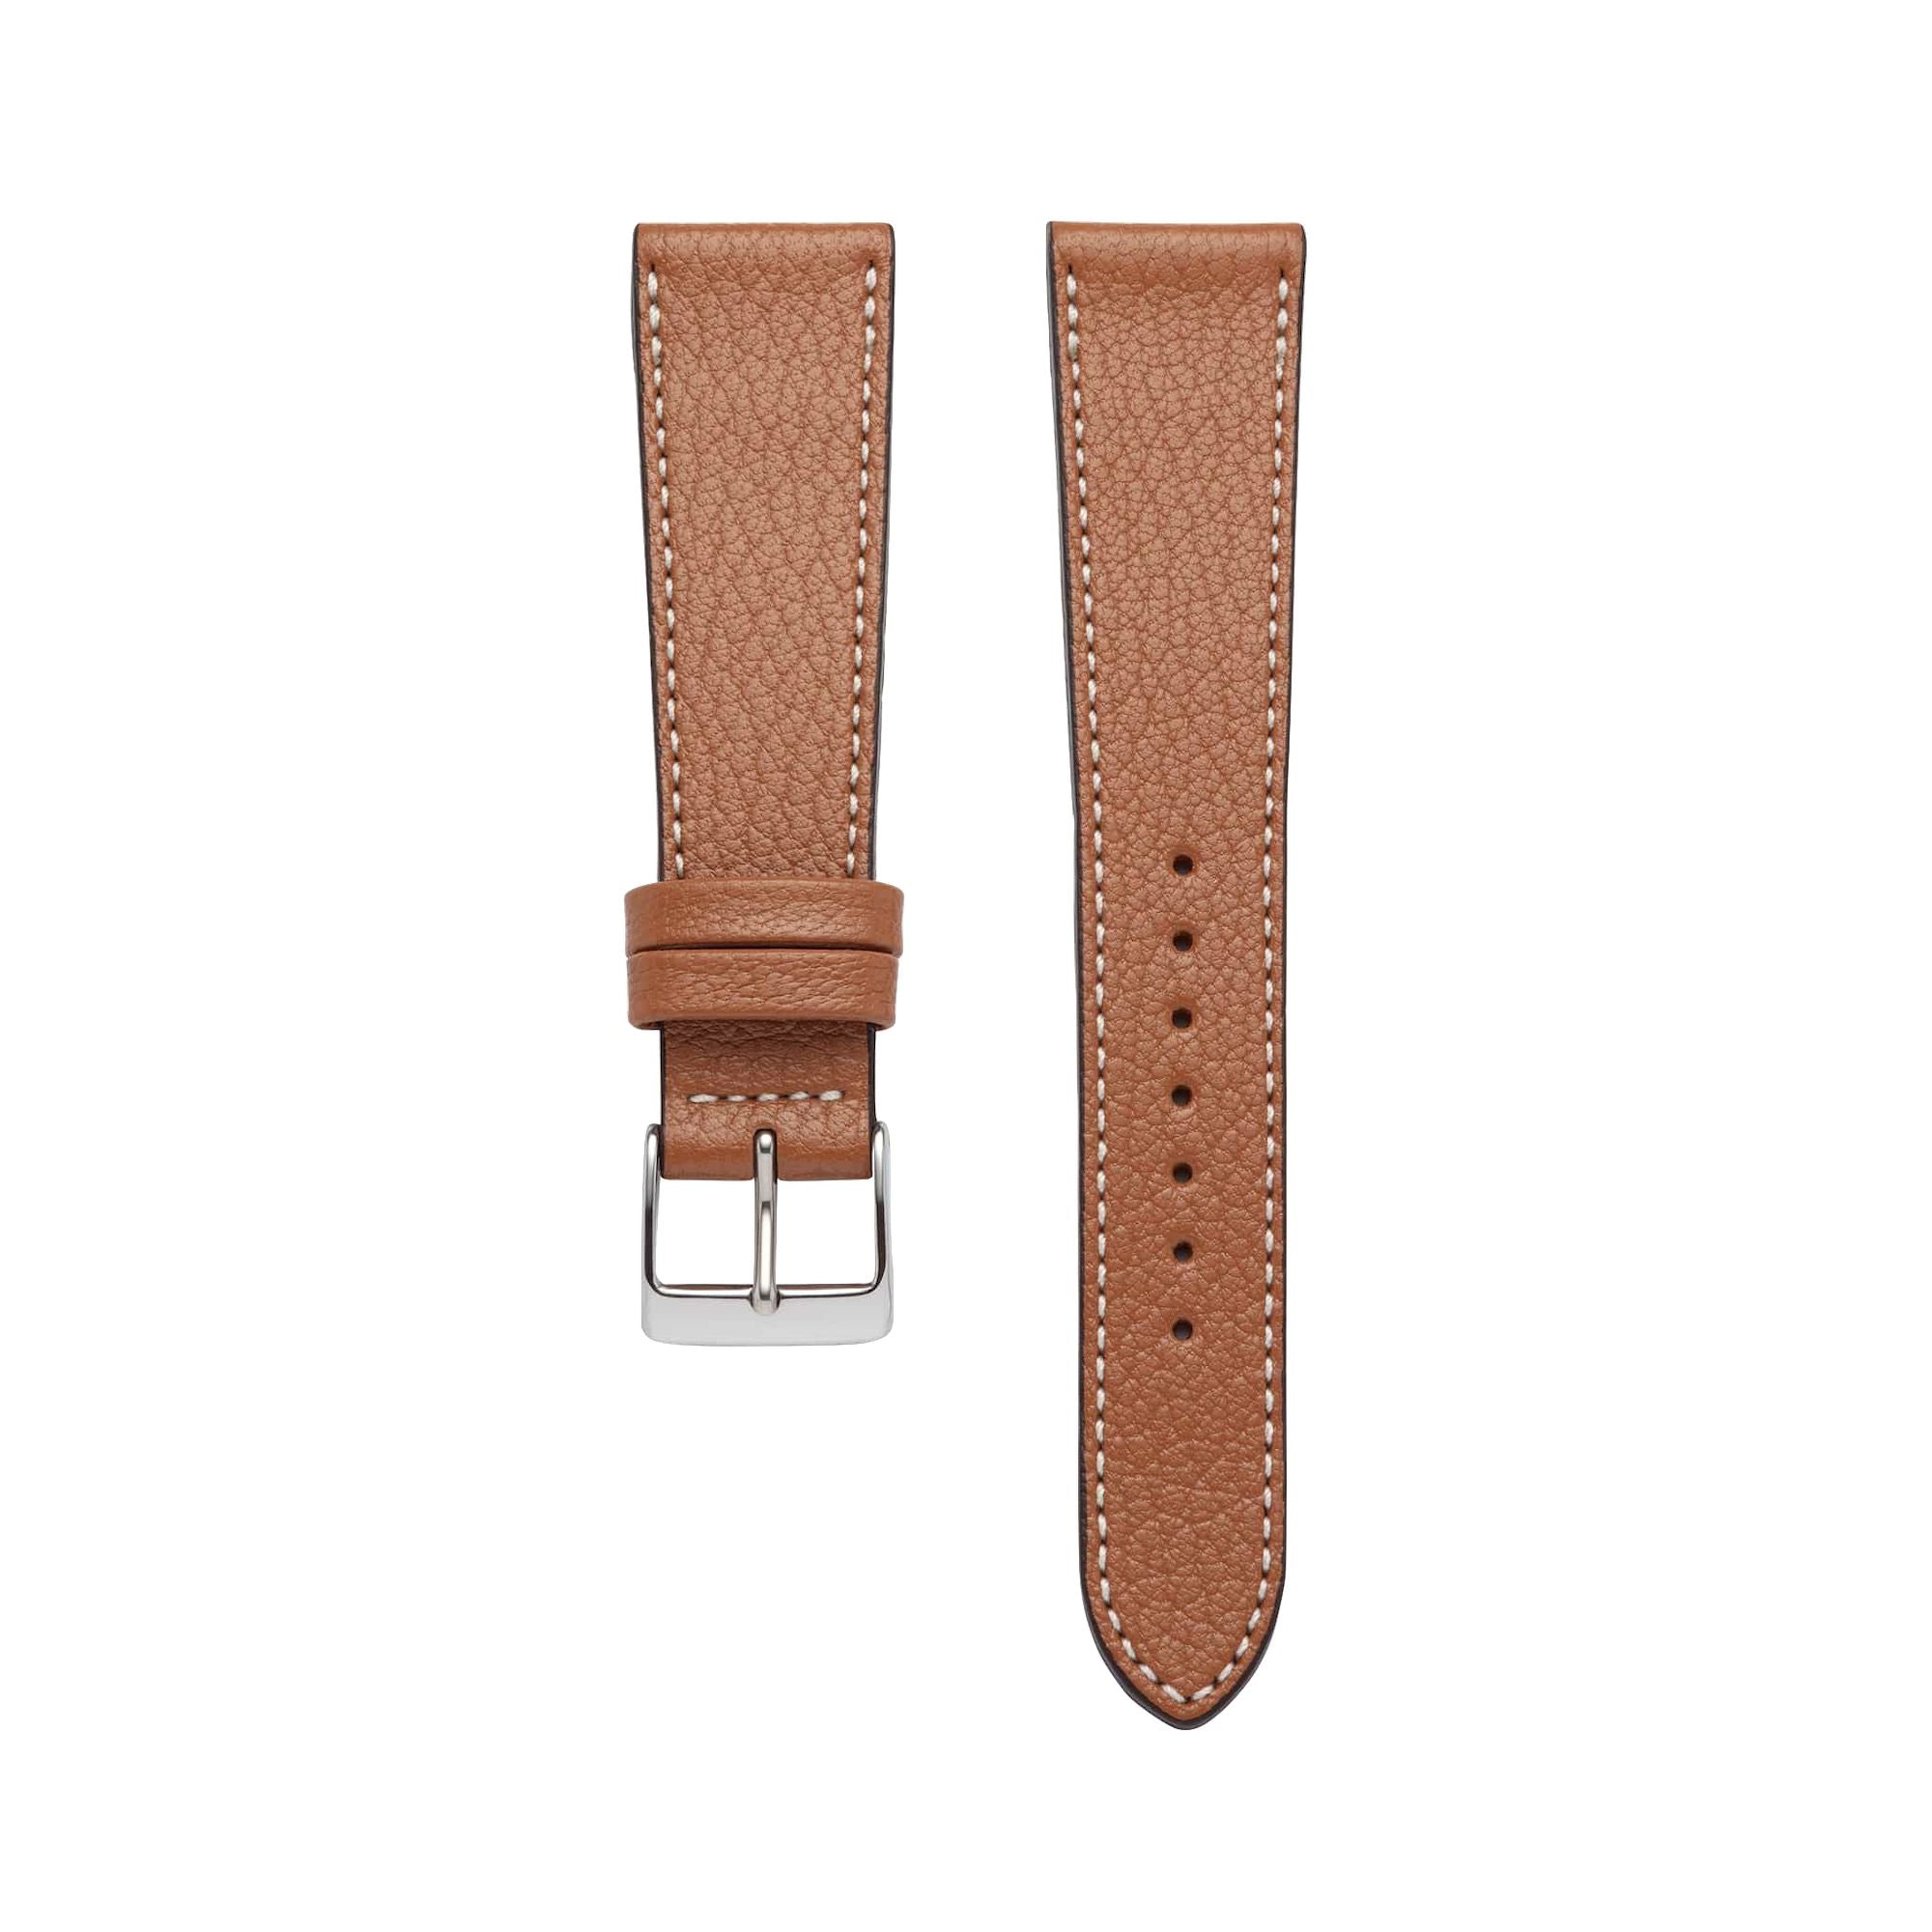 Goat Leather Slim | Armband aus Ziegenleder kompatibel mit Apple Watch-Whisky-BerlinBravo